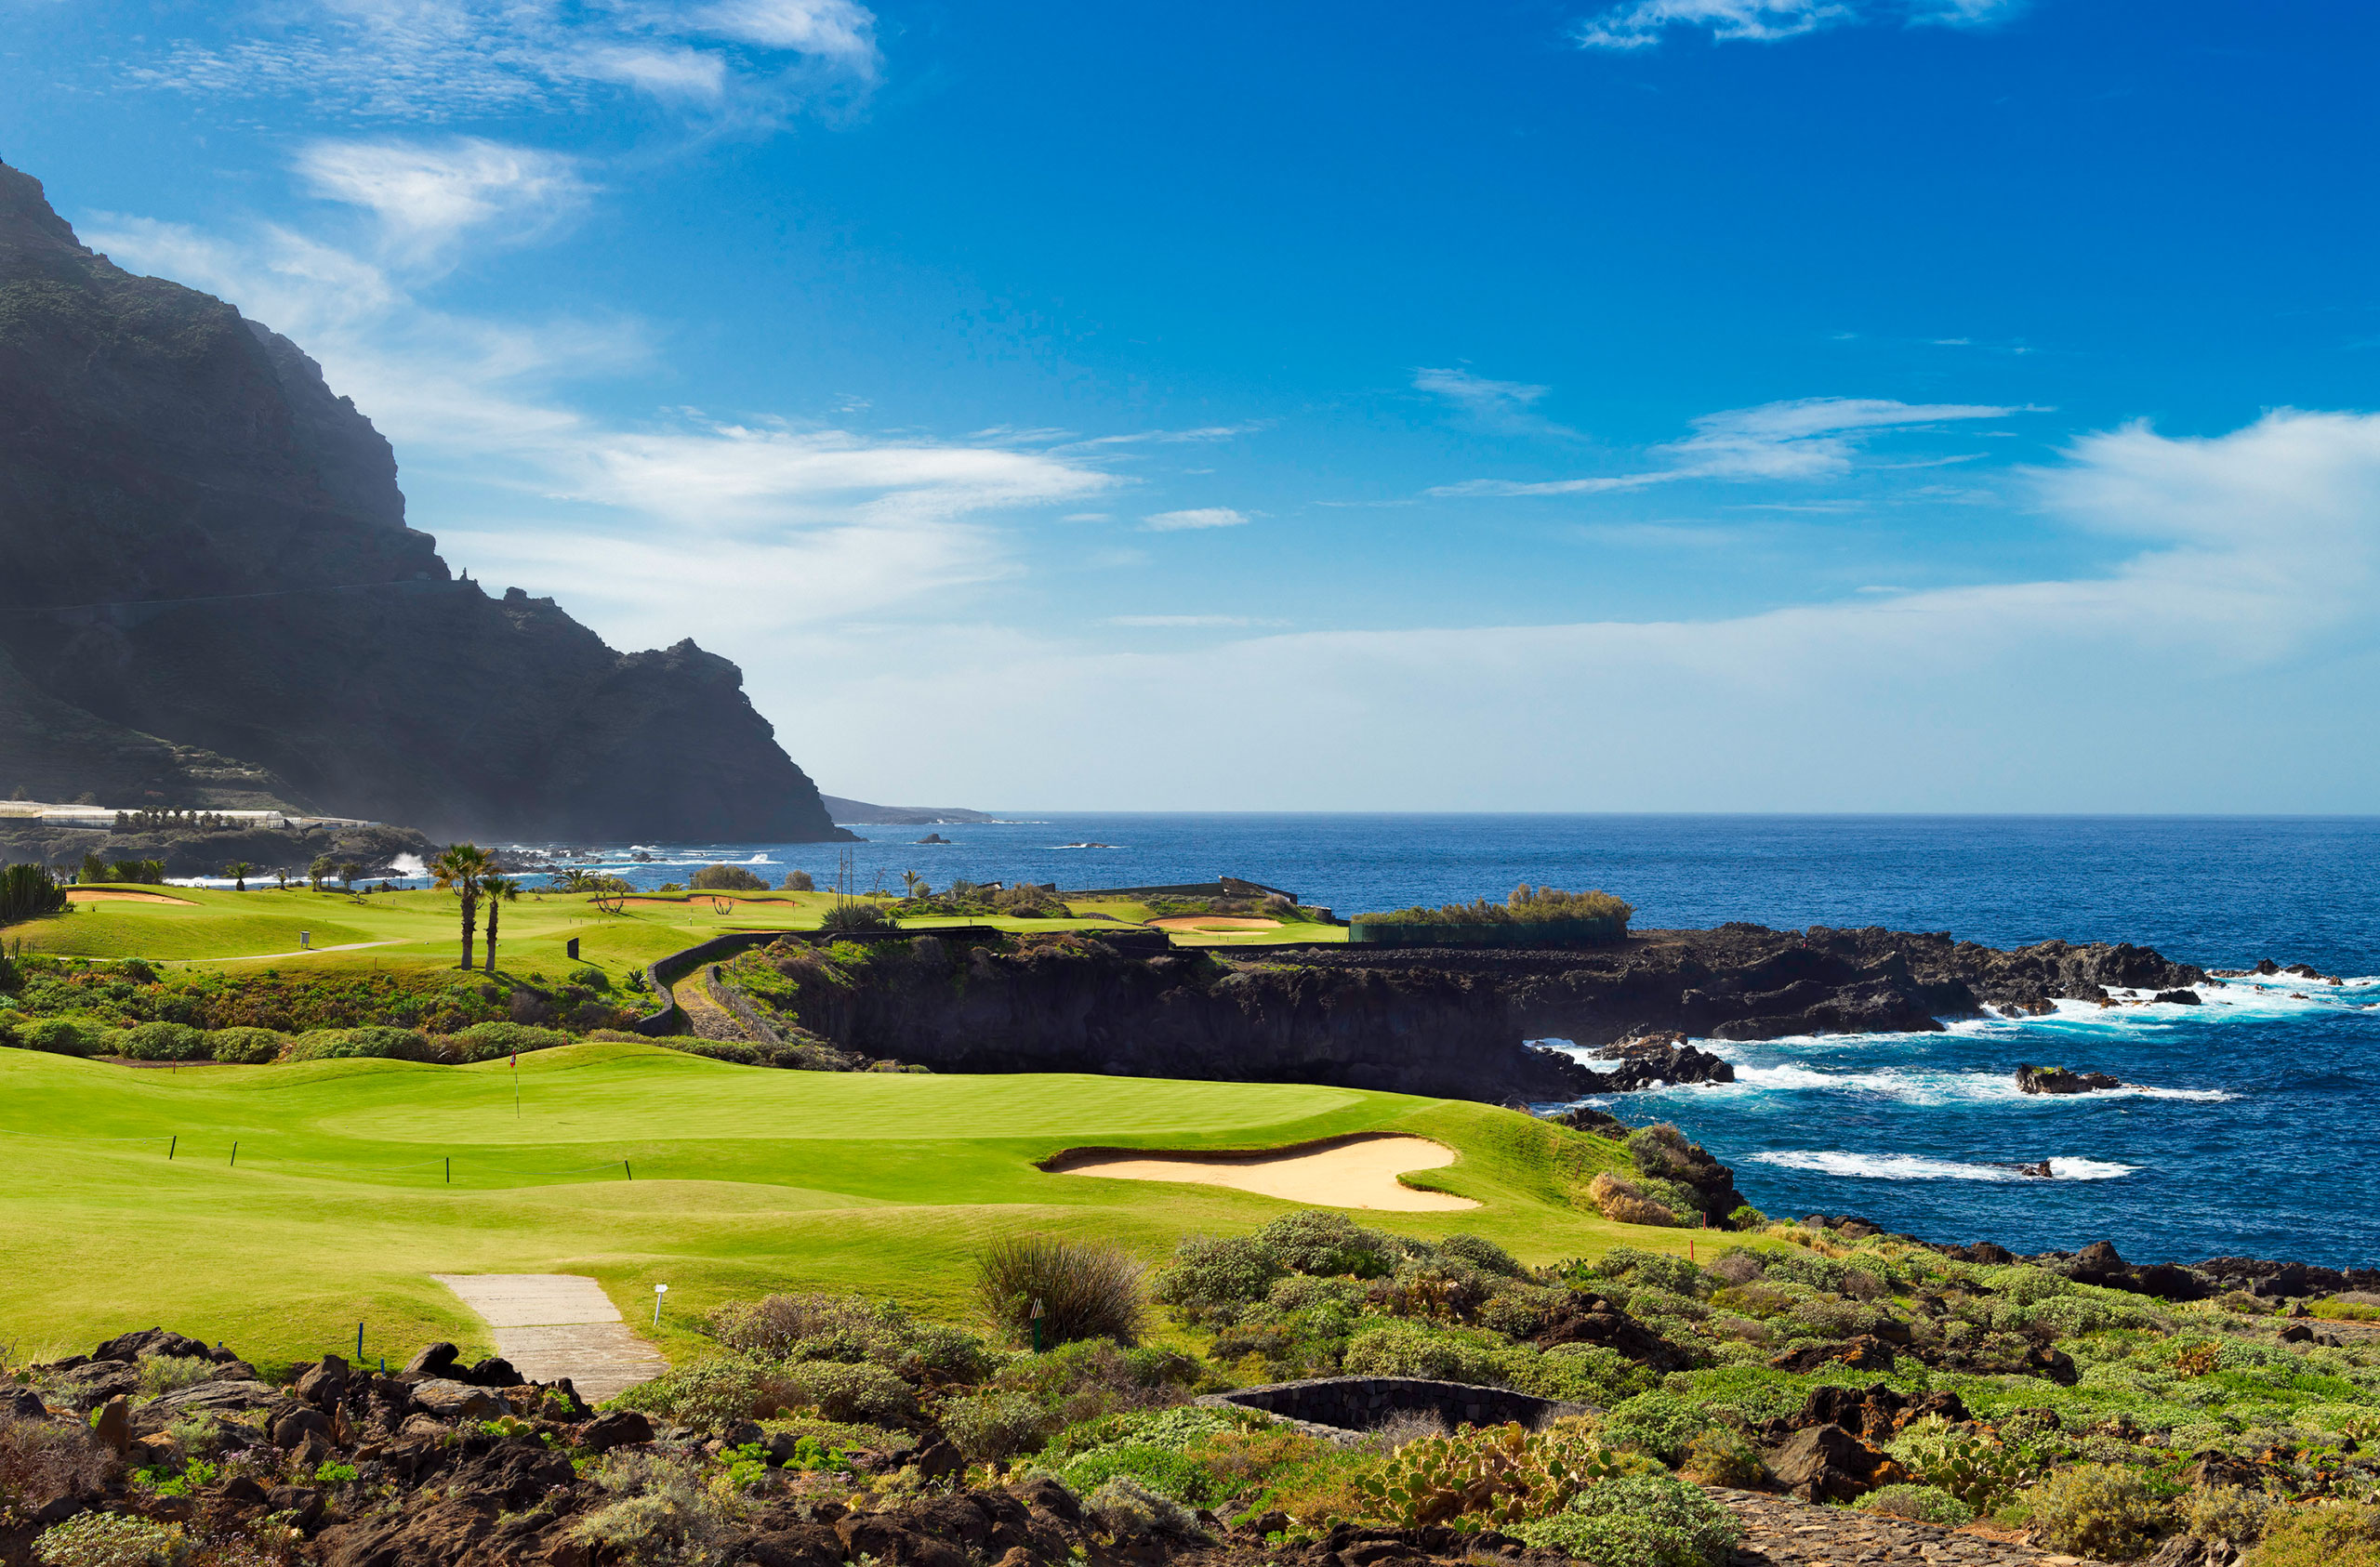 Melia Haciende Del Conde Golf Course with scenic clifftop backdrop